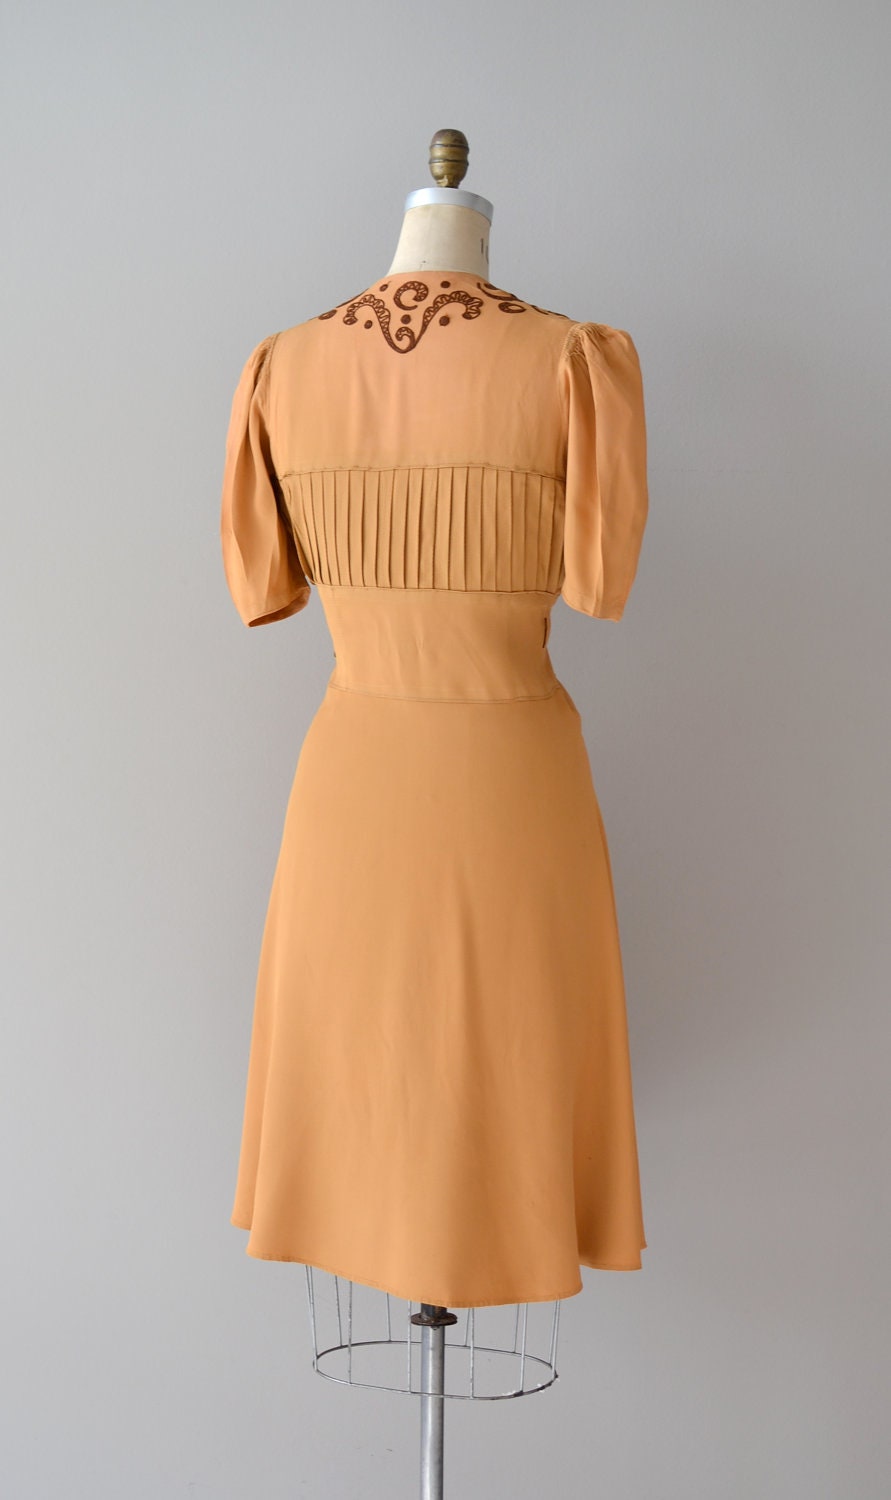 1930s dress / rayon 30s dress / Butterscotch Ganache dress